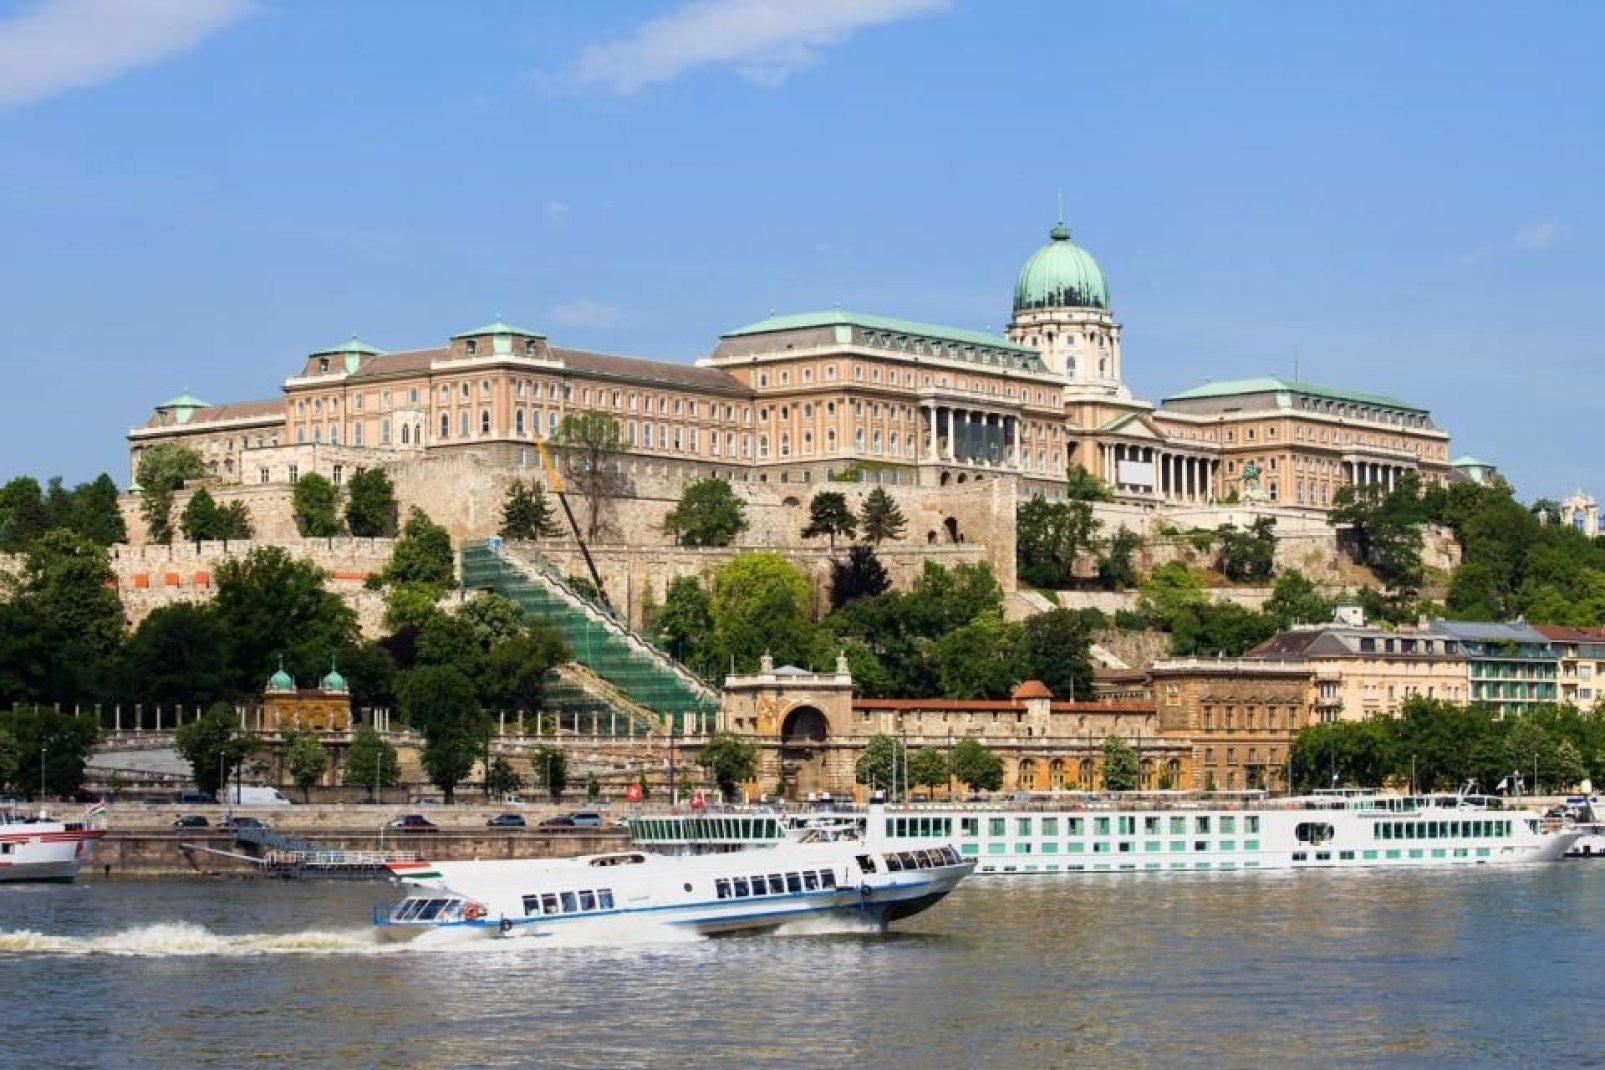 Von der Donau wird Budapest in zwei Teile geteilt: einerseits Buda und andererseits Pest. Die Stadt entstand aus der Verbindung dieser beiden Seiten sowie der alten Stadt Obuda. Sie wird Perle der Donau genannt und bietet den Besuchern eine Vielzahl kultureller Möglichkeiten mit all ihren Museen, Theatern und den beiden Opern. Mit einer Seilbahn erreicht man den oberen Teil von Buda, von wo aus man ...